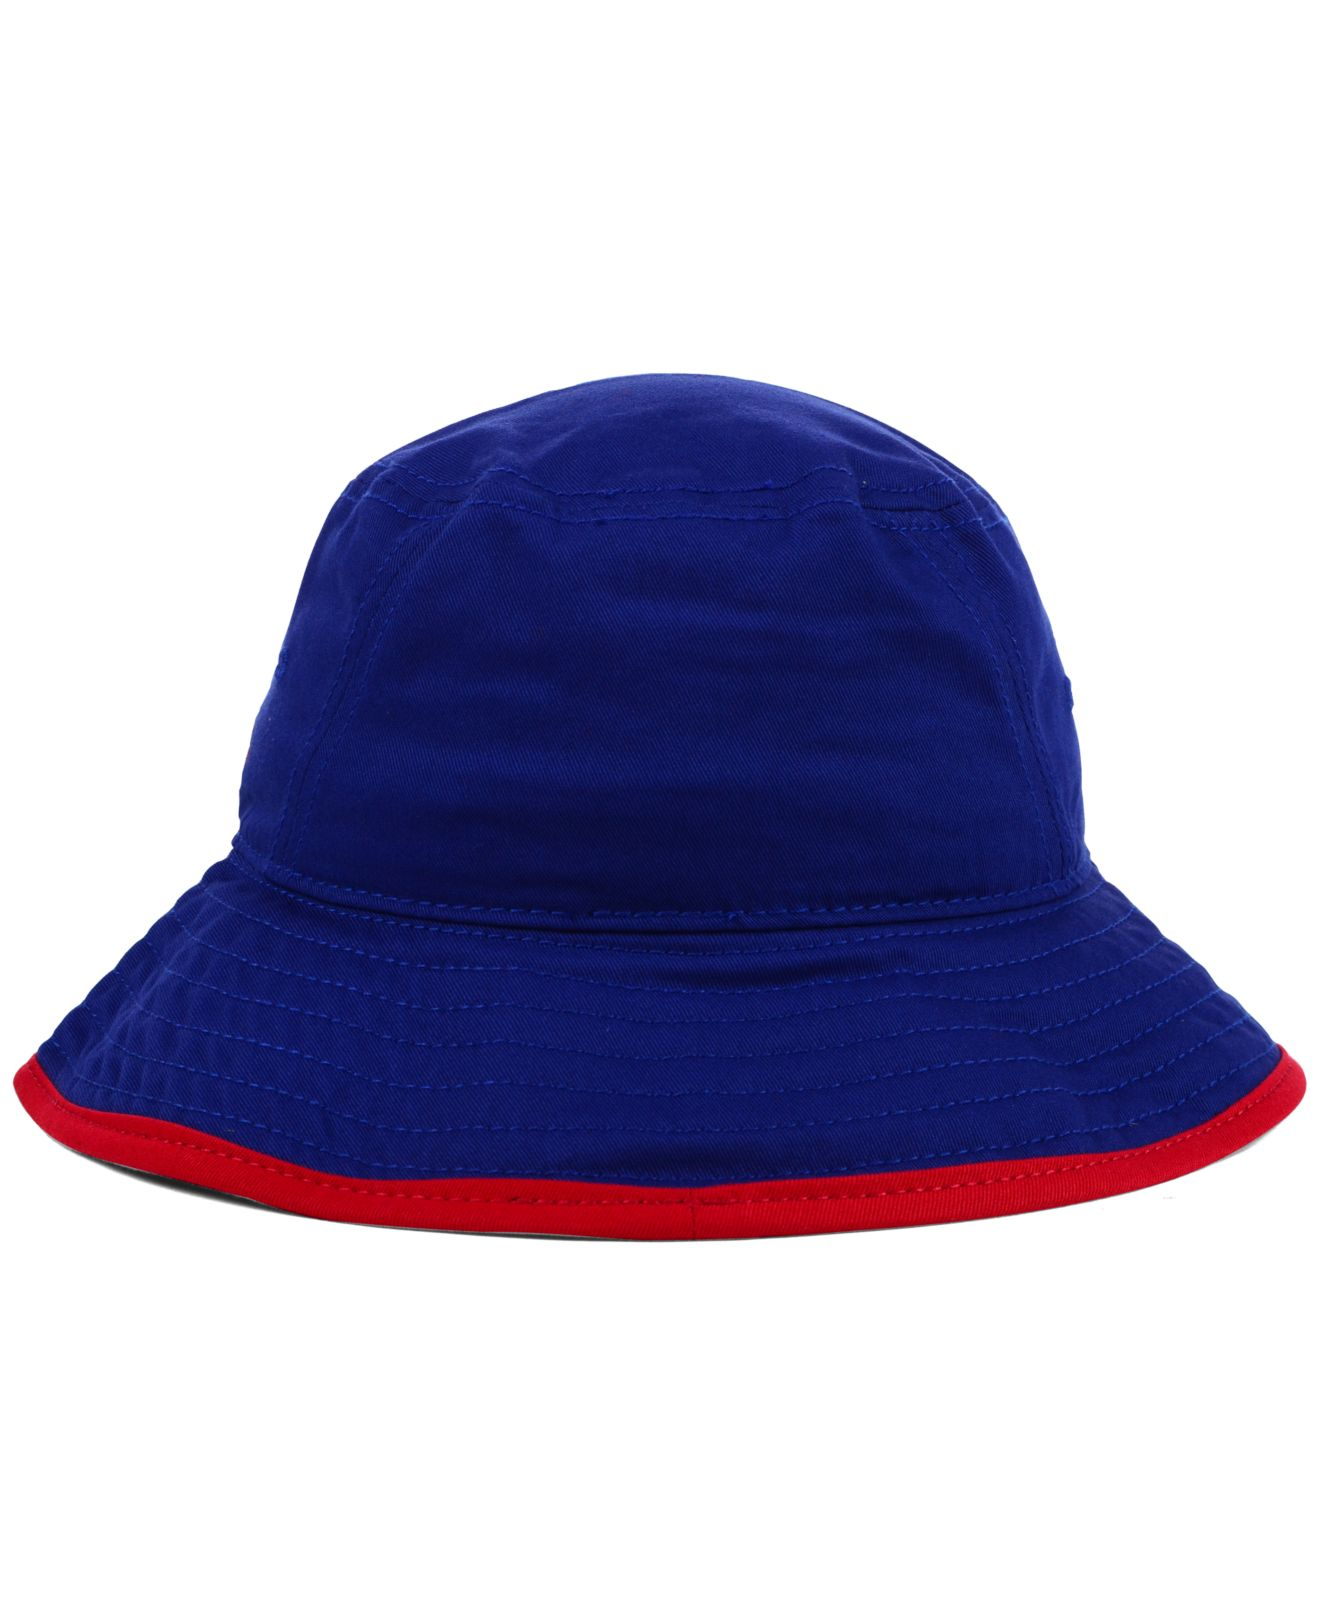 Lyst - KTZ New York Rangers Basic Tipped Bucket Hat in Blue for Men